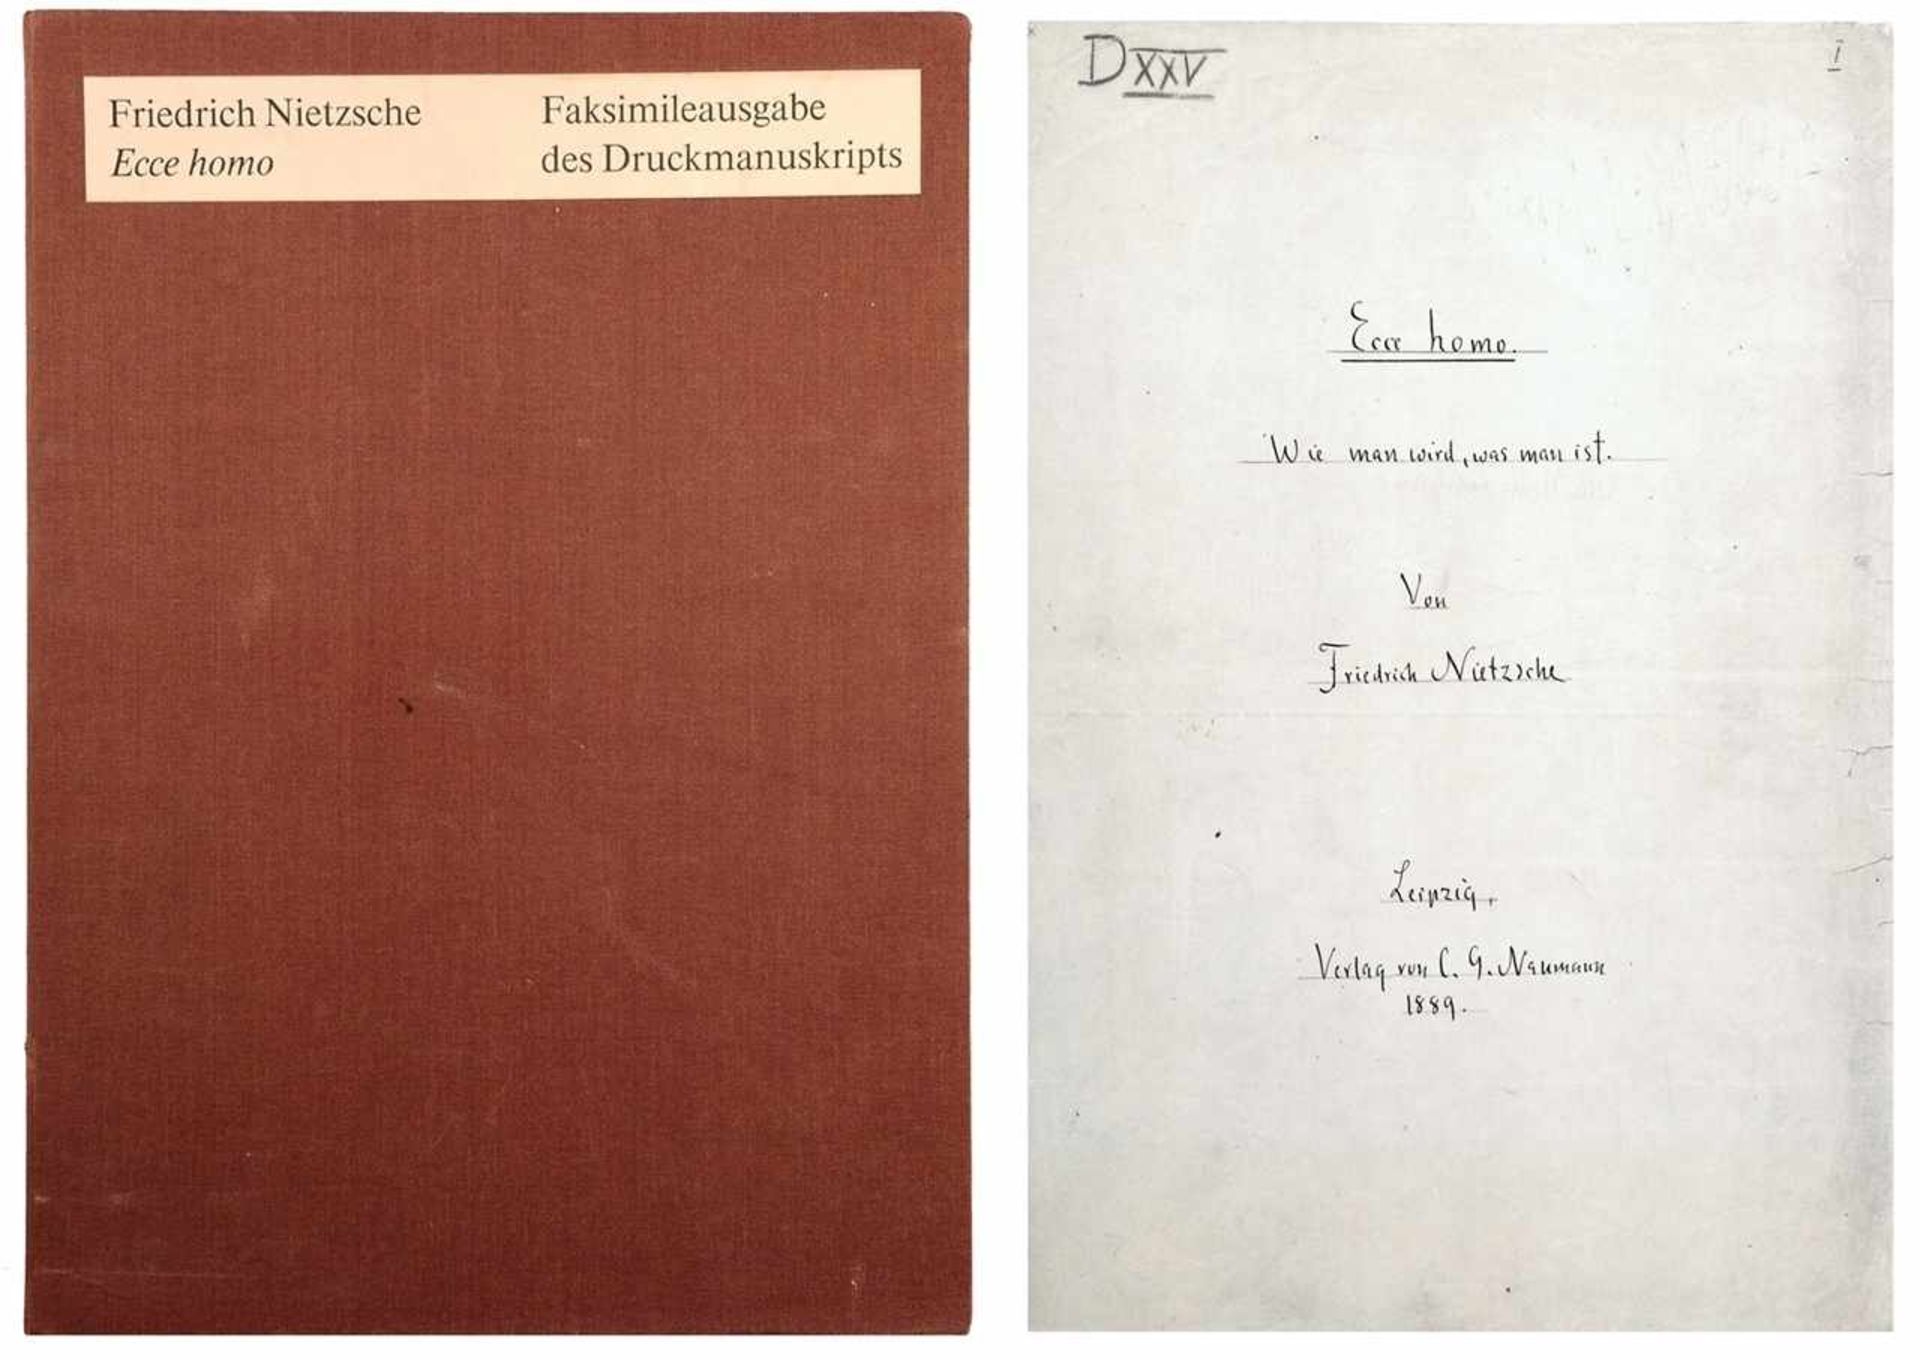 "Ecce homo von Friedrich Nietzsche. Faksimileausgabe des Druckmanuskripts." Bestehend aus Offset-